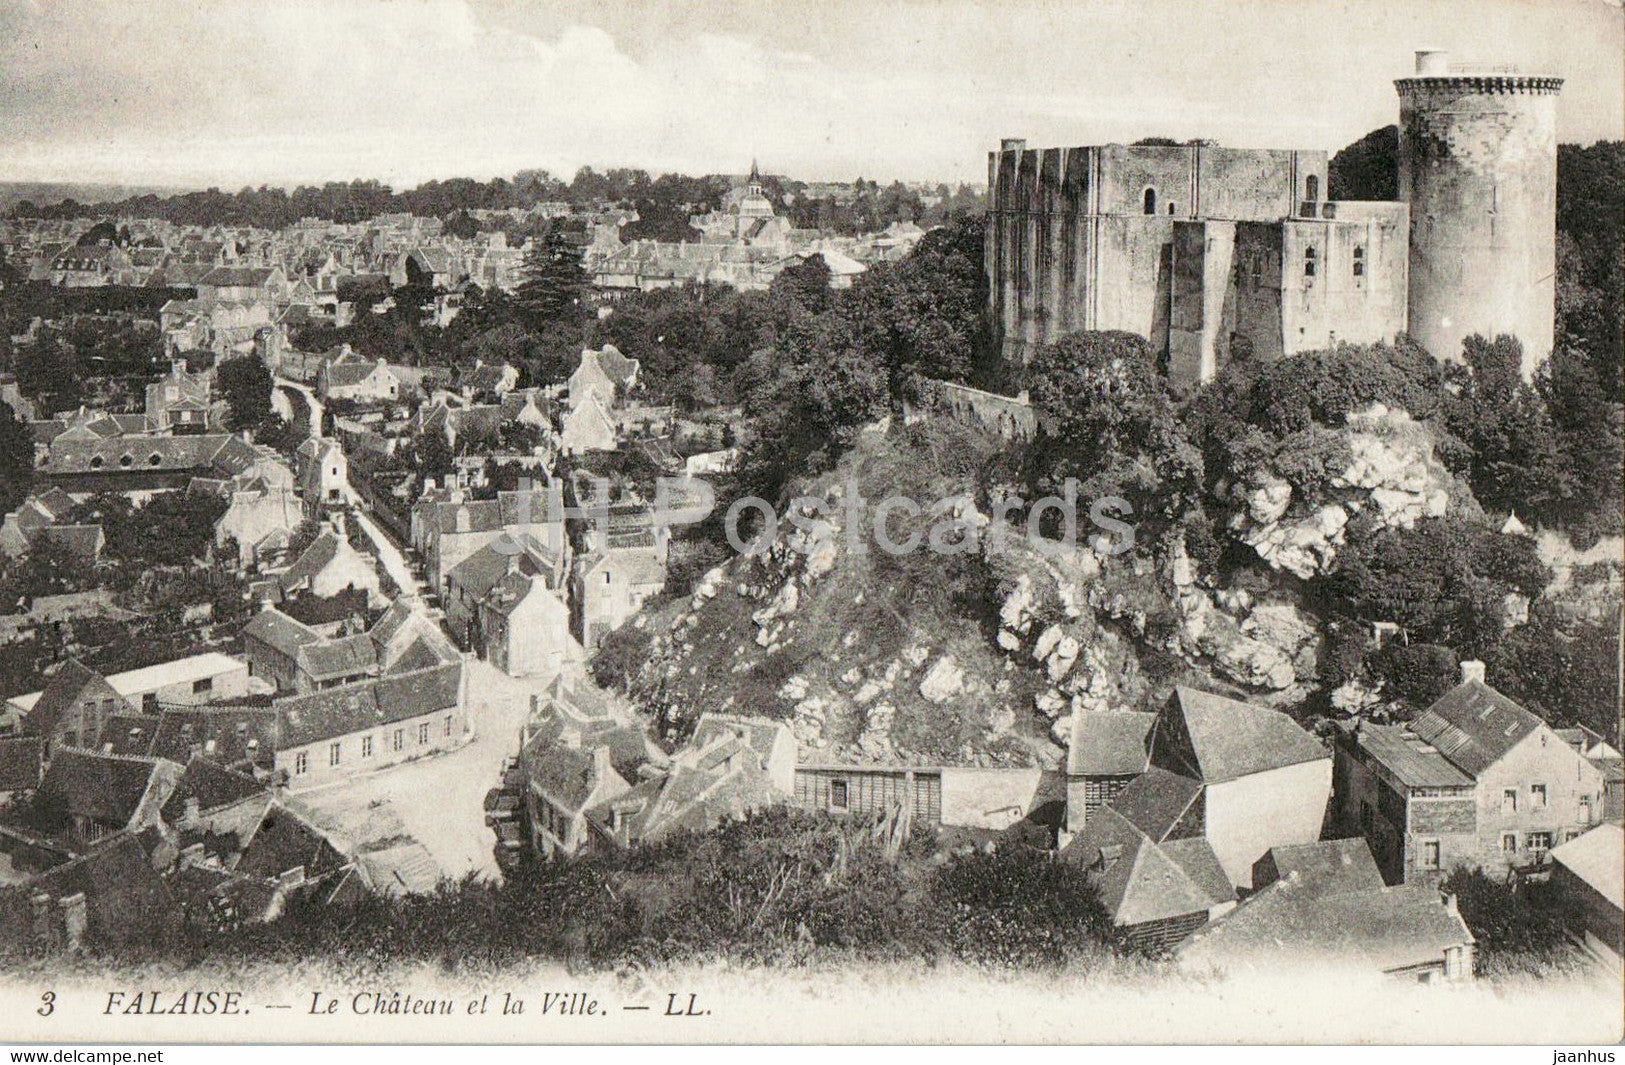 Falaise - Le Chateau et la Ville - 3 - castle - old postcard - 1913 - France - used - JH Postcards